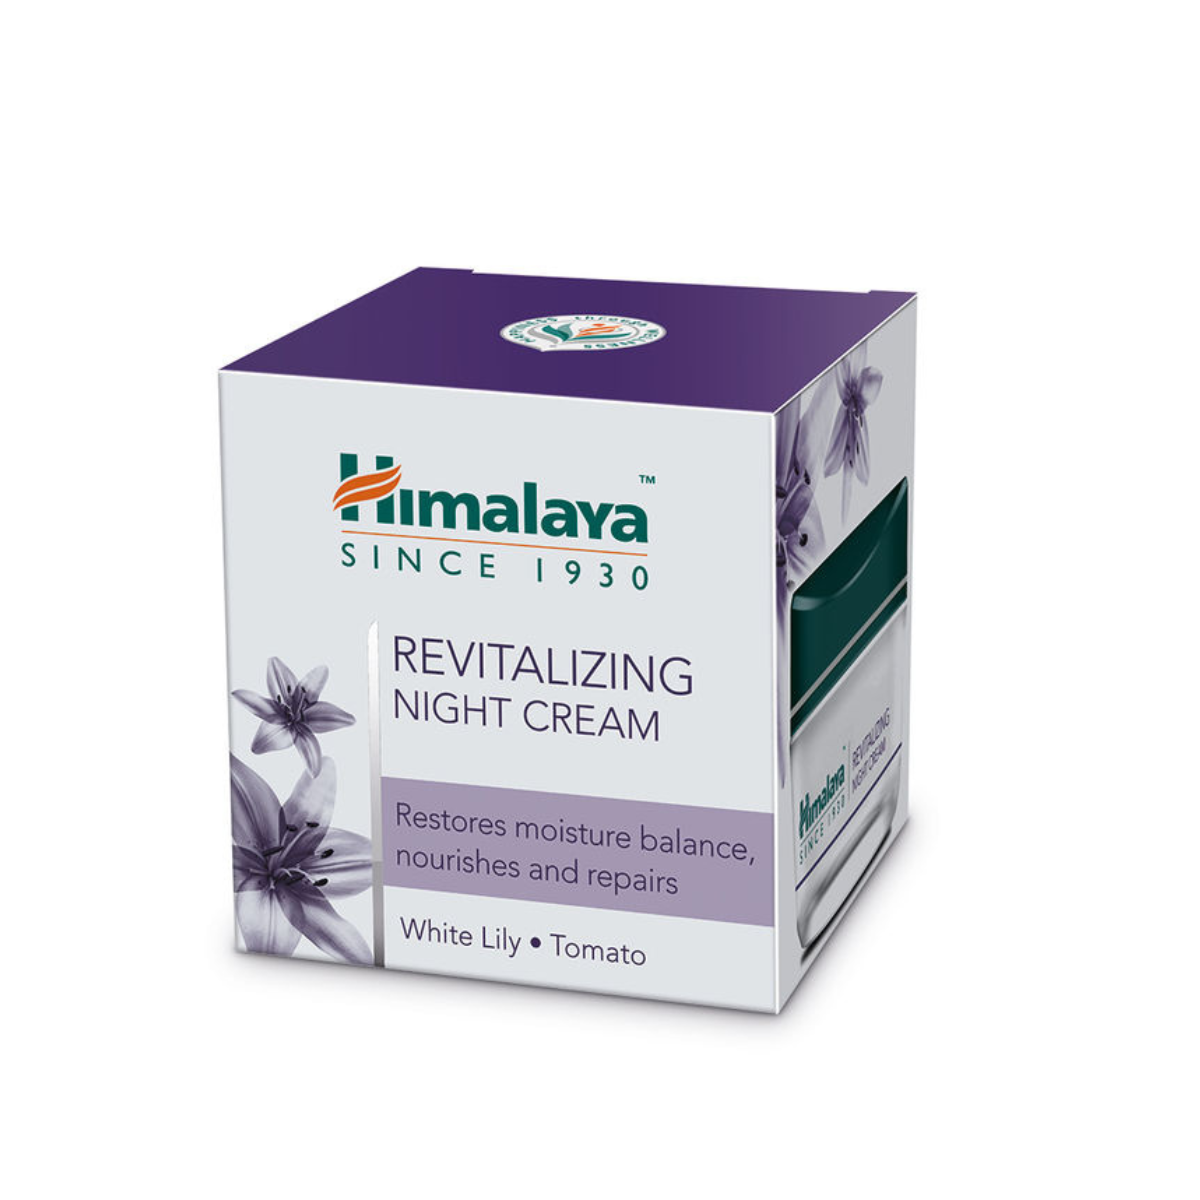 Himalaya Revitalizing Night Cream - Restores Moisture Balance, Nourishes And Repairs - White Lily + Tomato - 50g